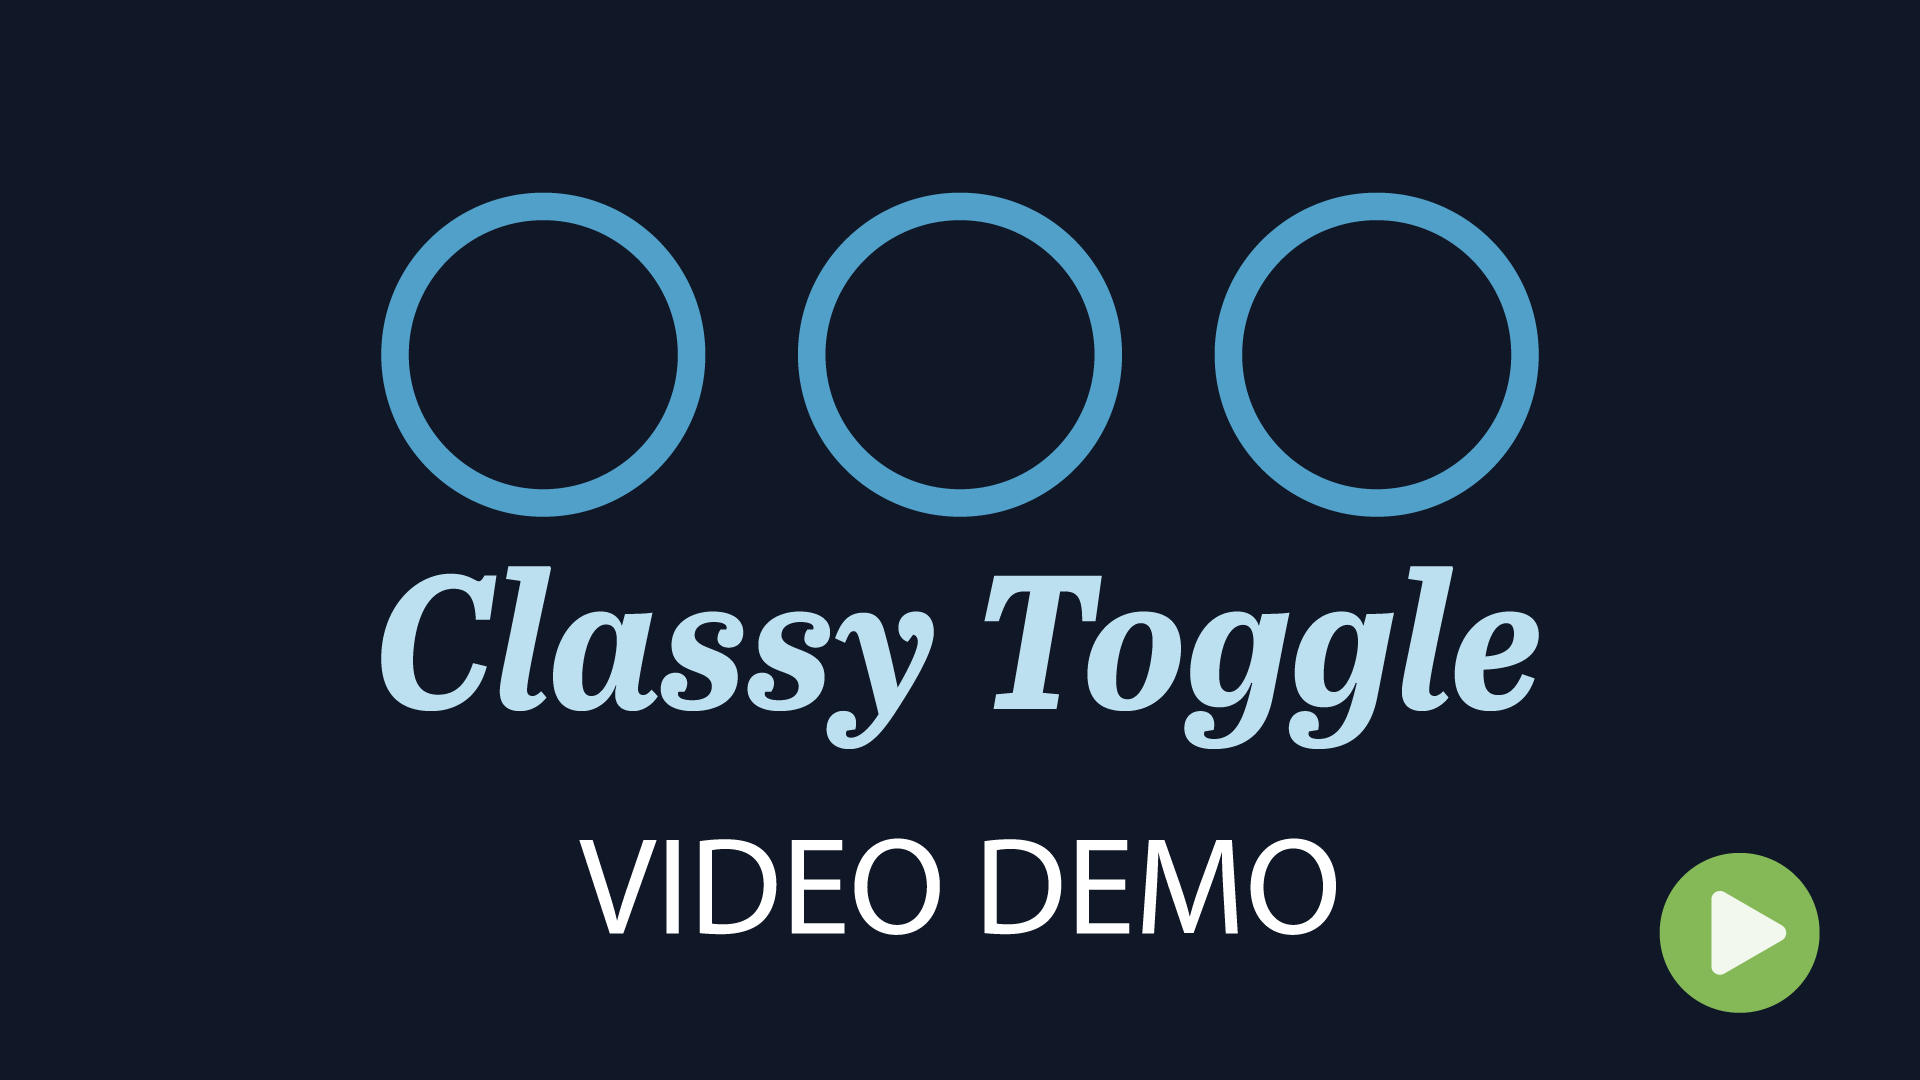 Classy Toggle Demo Video